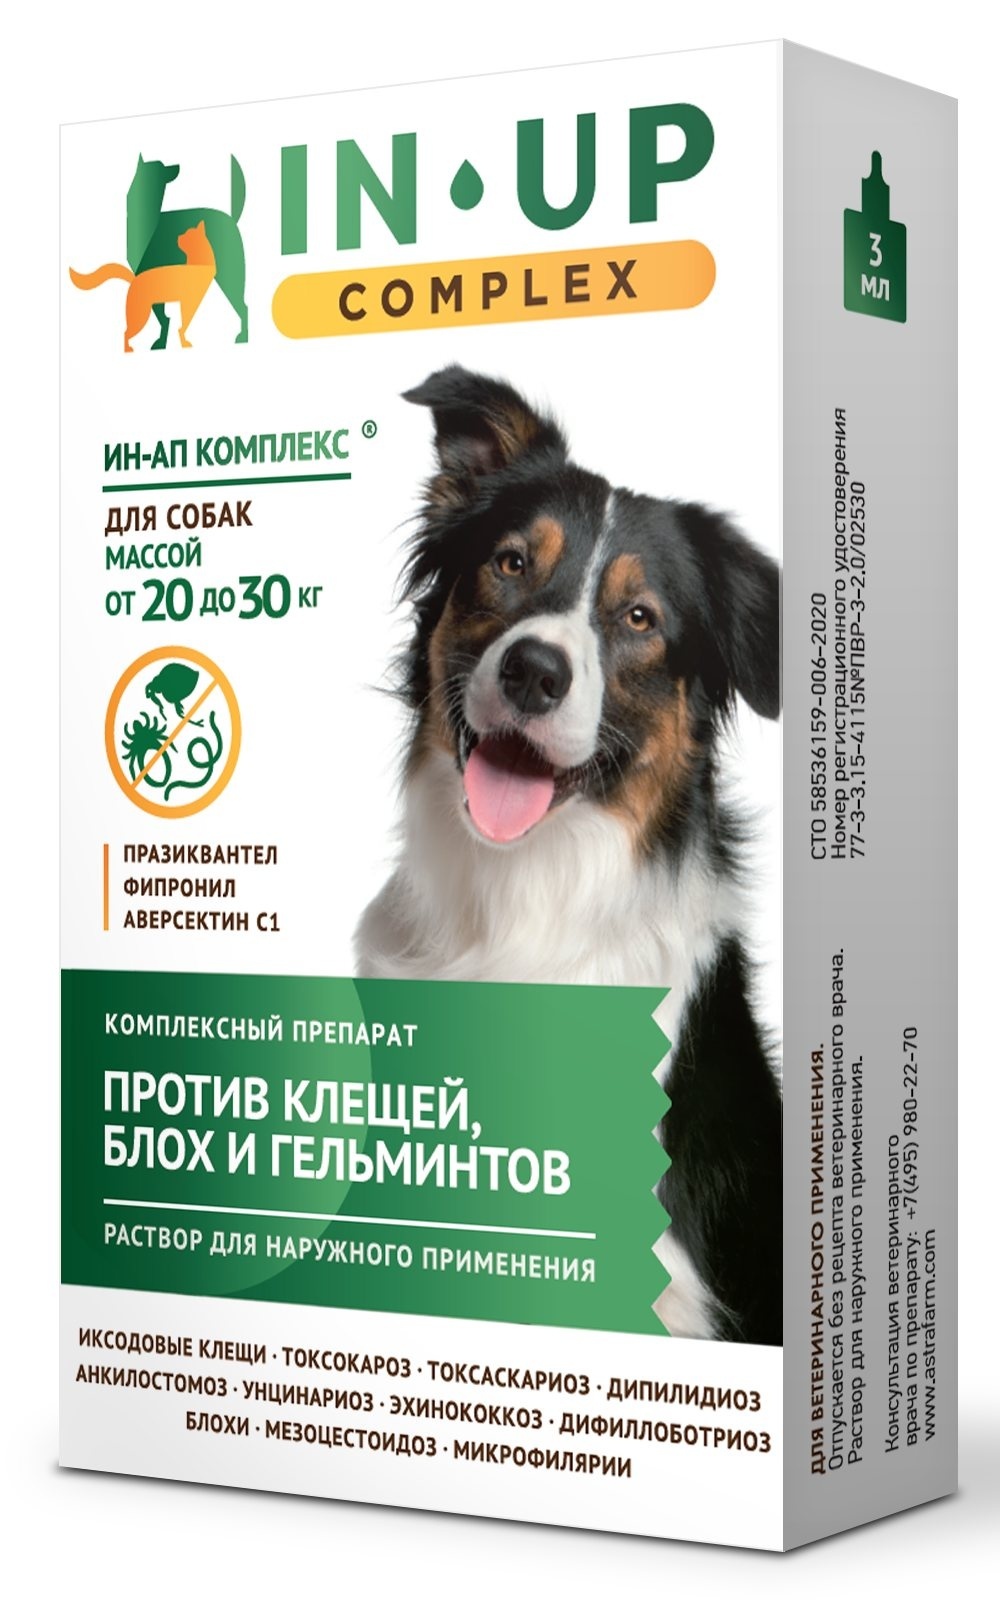 Астрафарм Астрафарм иН-АП комплекс для собак массой от 20 до 30 кг против блох, клещей, вшей, власоедов и гельминтов (23 г)